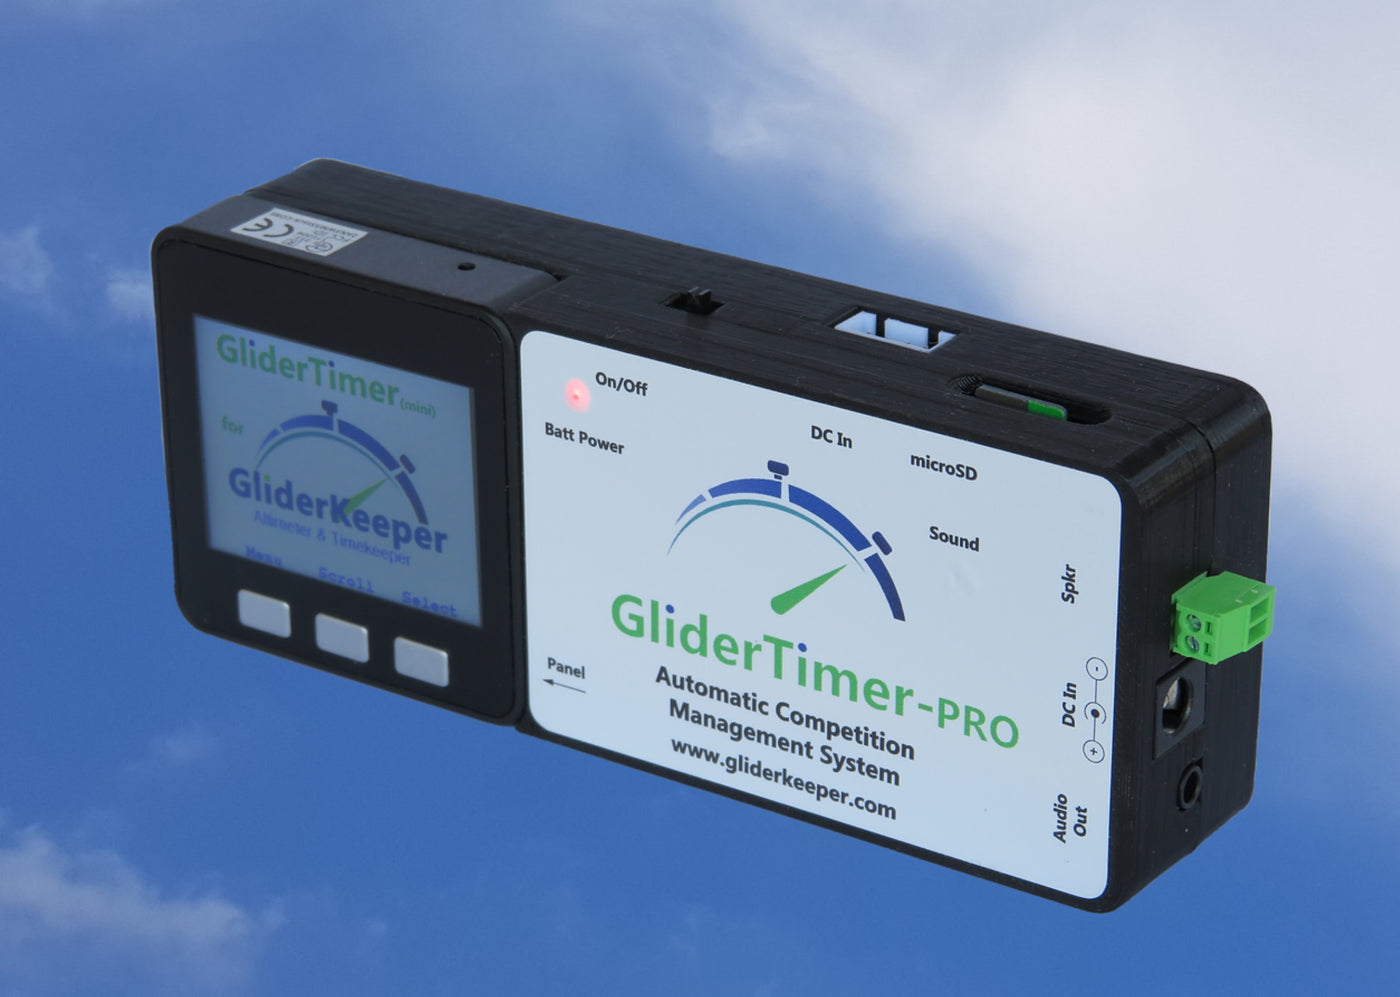 GliderTimer-Pro